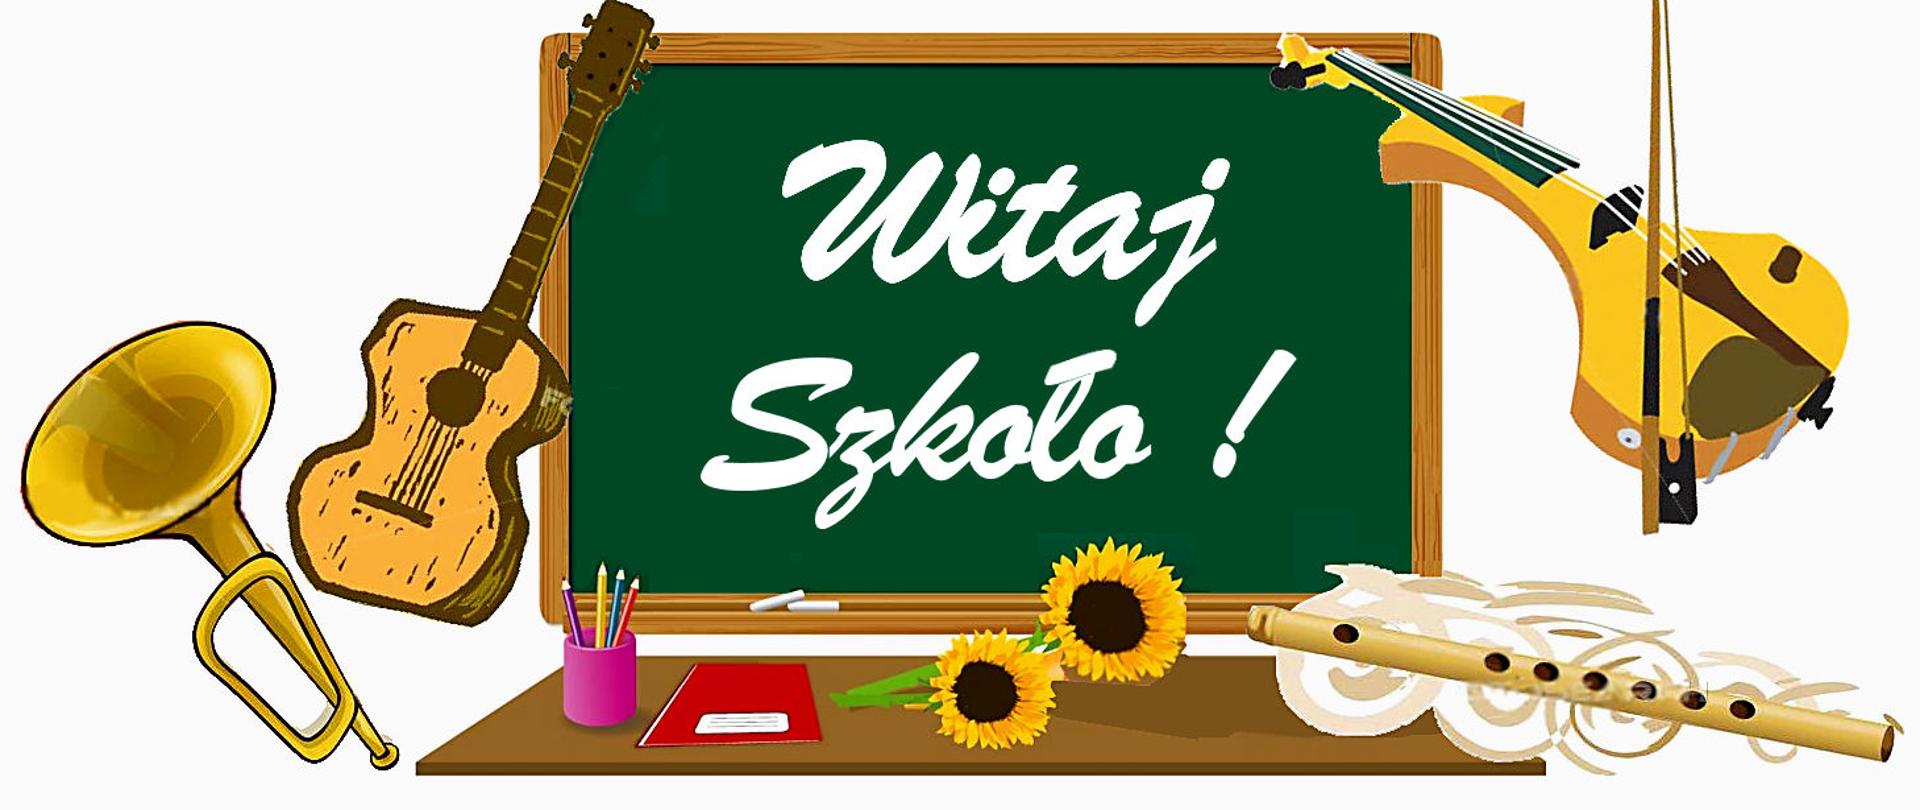 Na ilustracji zamieszczona jest tablica z napisem "Witaj Szkoło!". Wokół tablicy namalowane są instrumenty muzyczne, przybory szkolne oraz kwiaty.